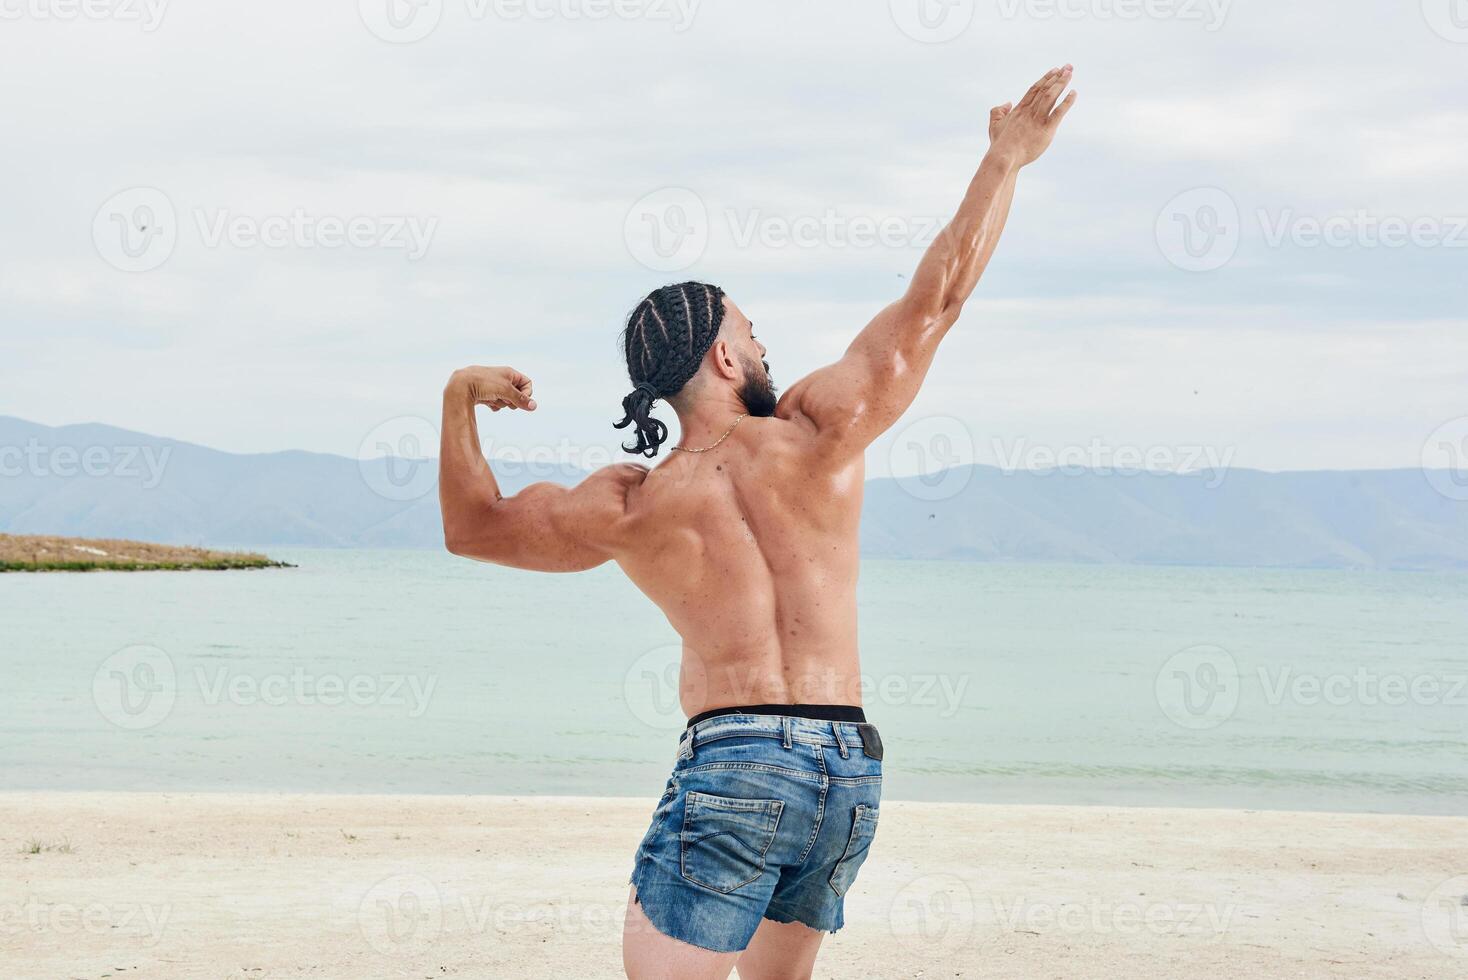 joven muscular hombre hacer ejercicio en el playa, joven muscular hombre haciendo culturismo ejercicios en el playa, atlético joven hombre en el playa foto